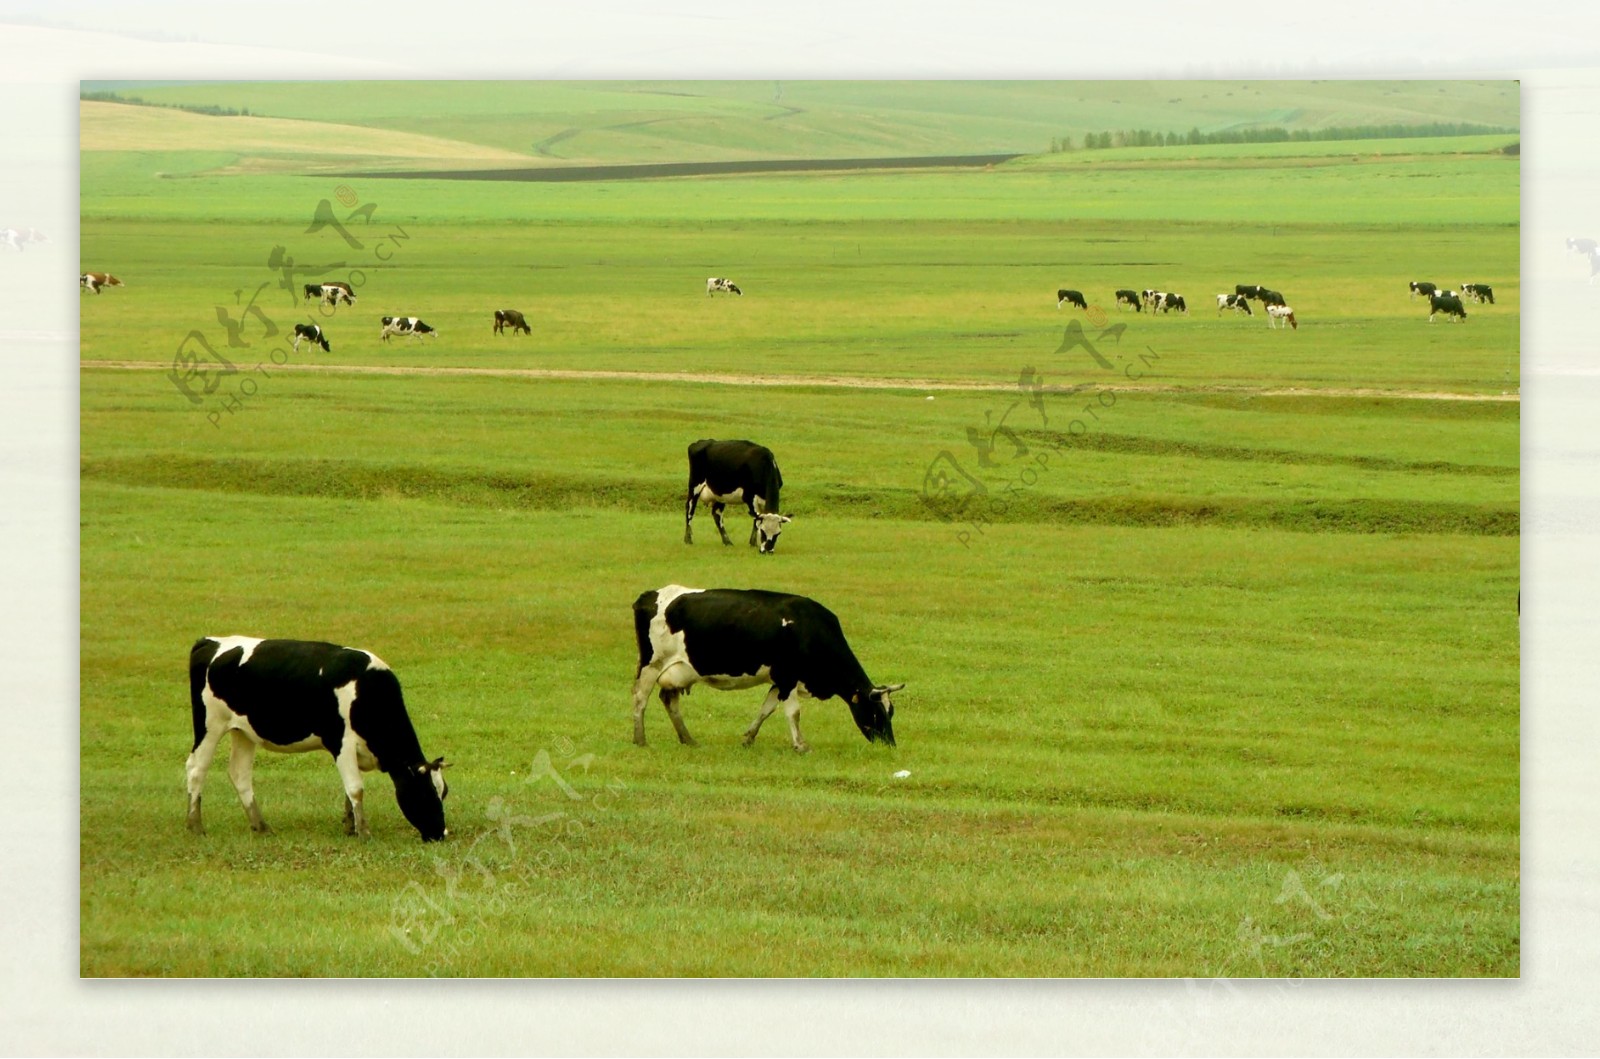 草原牛群图片